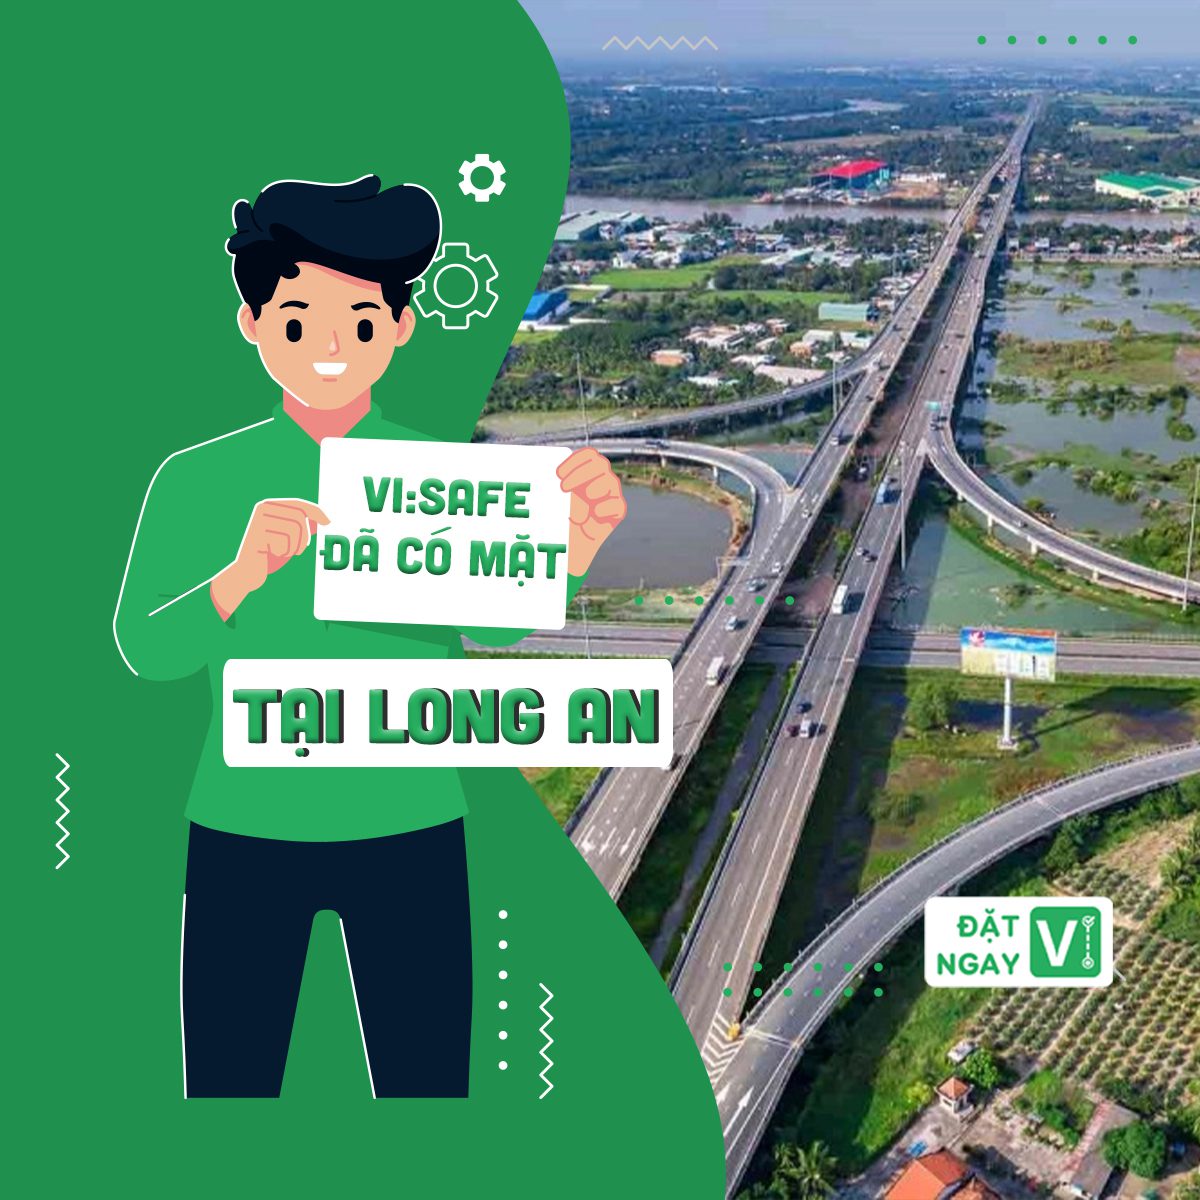 Dịch vụ thuê tài xế lái xe hộ tại Long An qua ứng dụng ViSafe